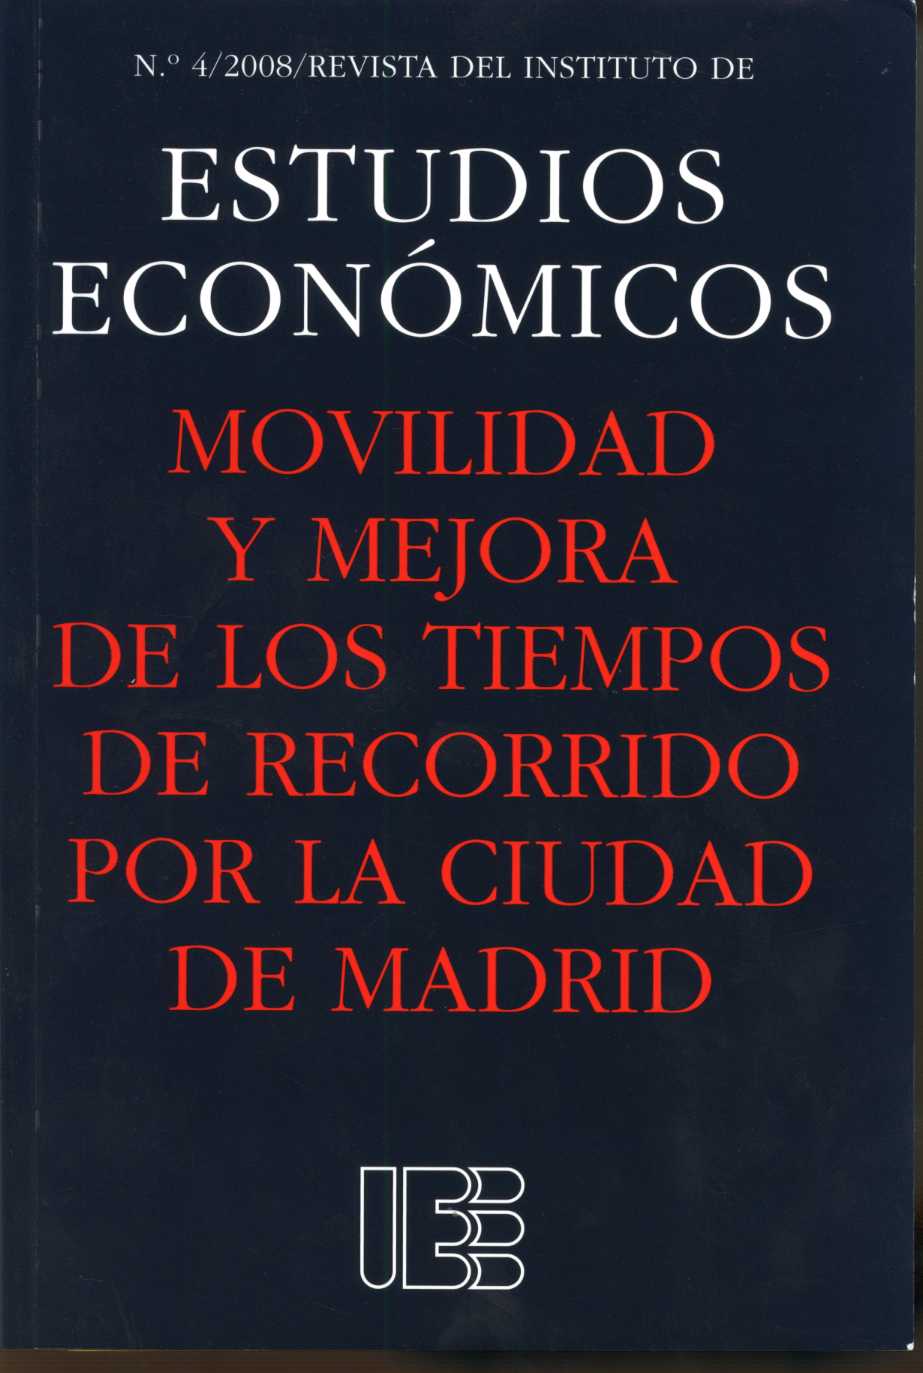 Movilidad y Mejora de los Tiempos de Recorrido por la Ciudad de Madrid. Revista del Instituto de Estudios Económicos Nº 4/2008-0